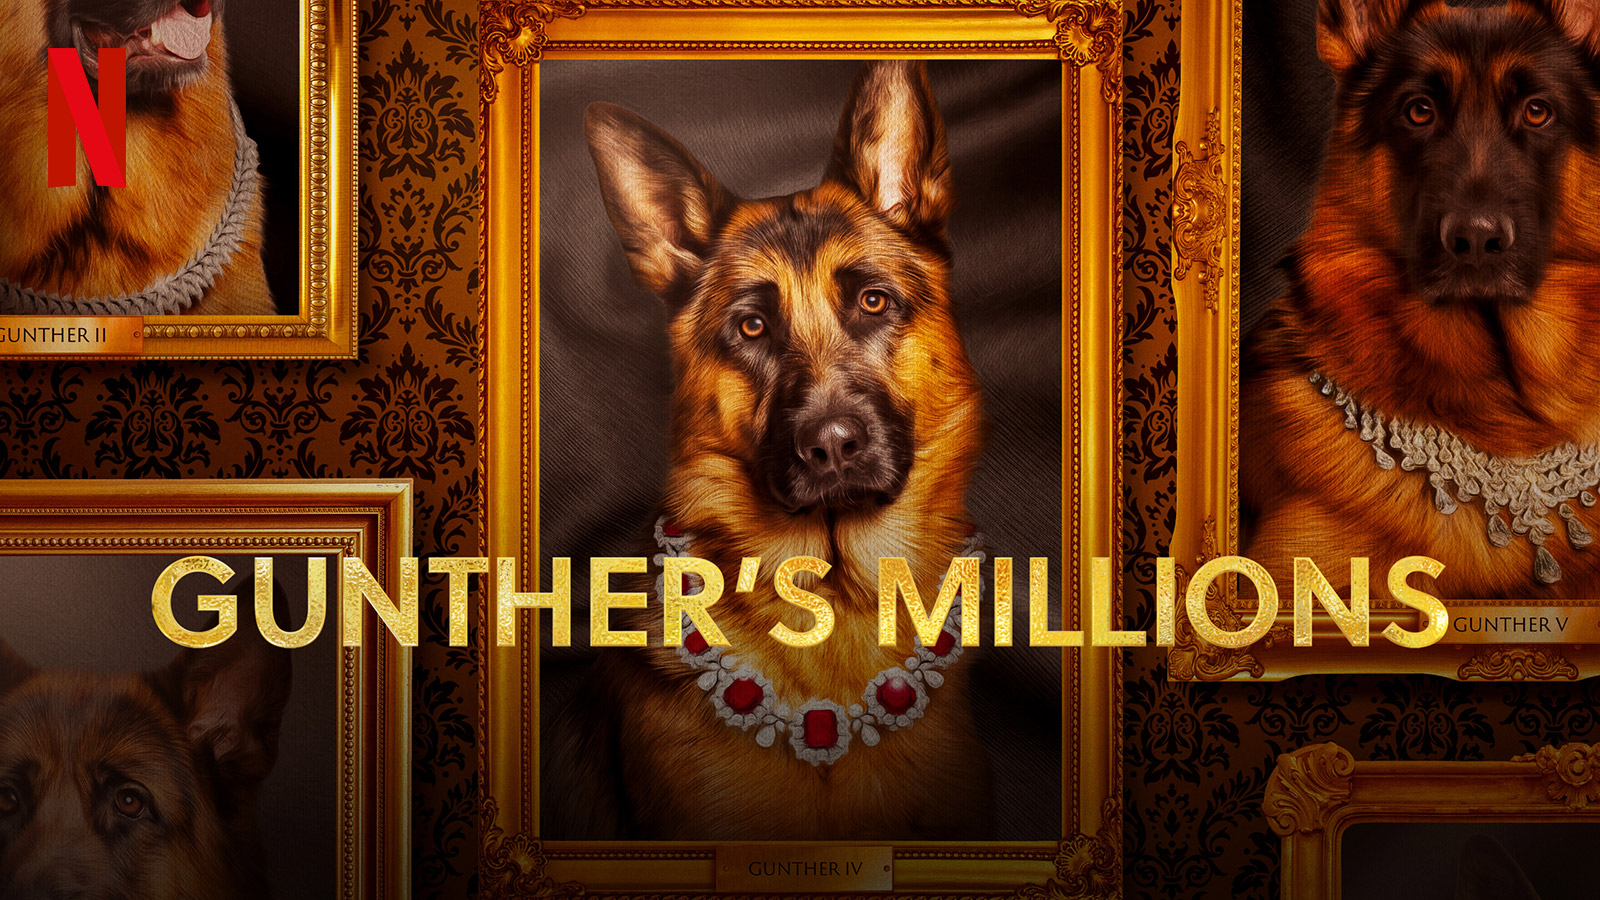 Gunther, el perro millonario